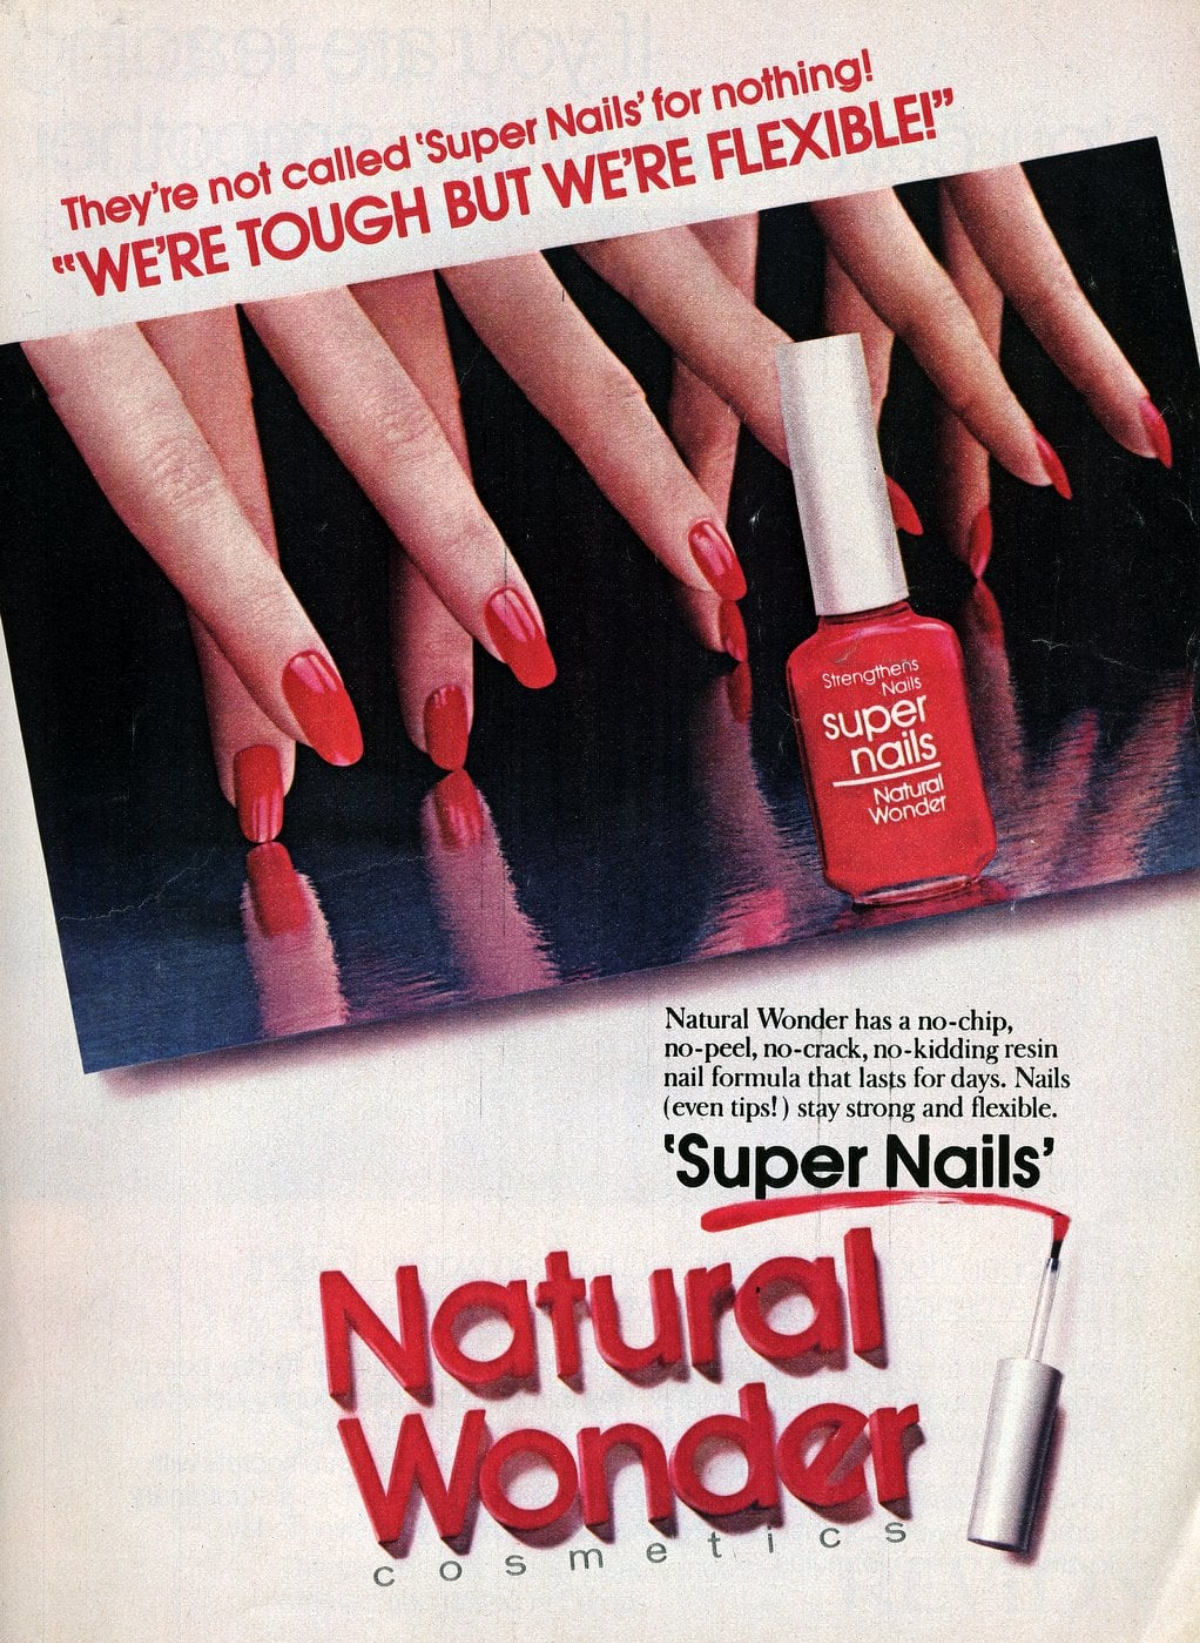 Super Nails by Natural Wonder, 1982.